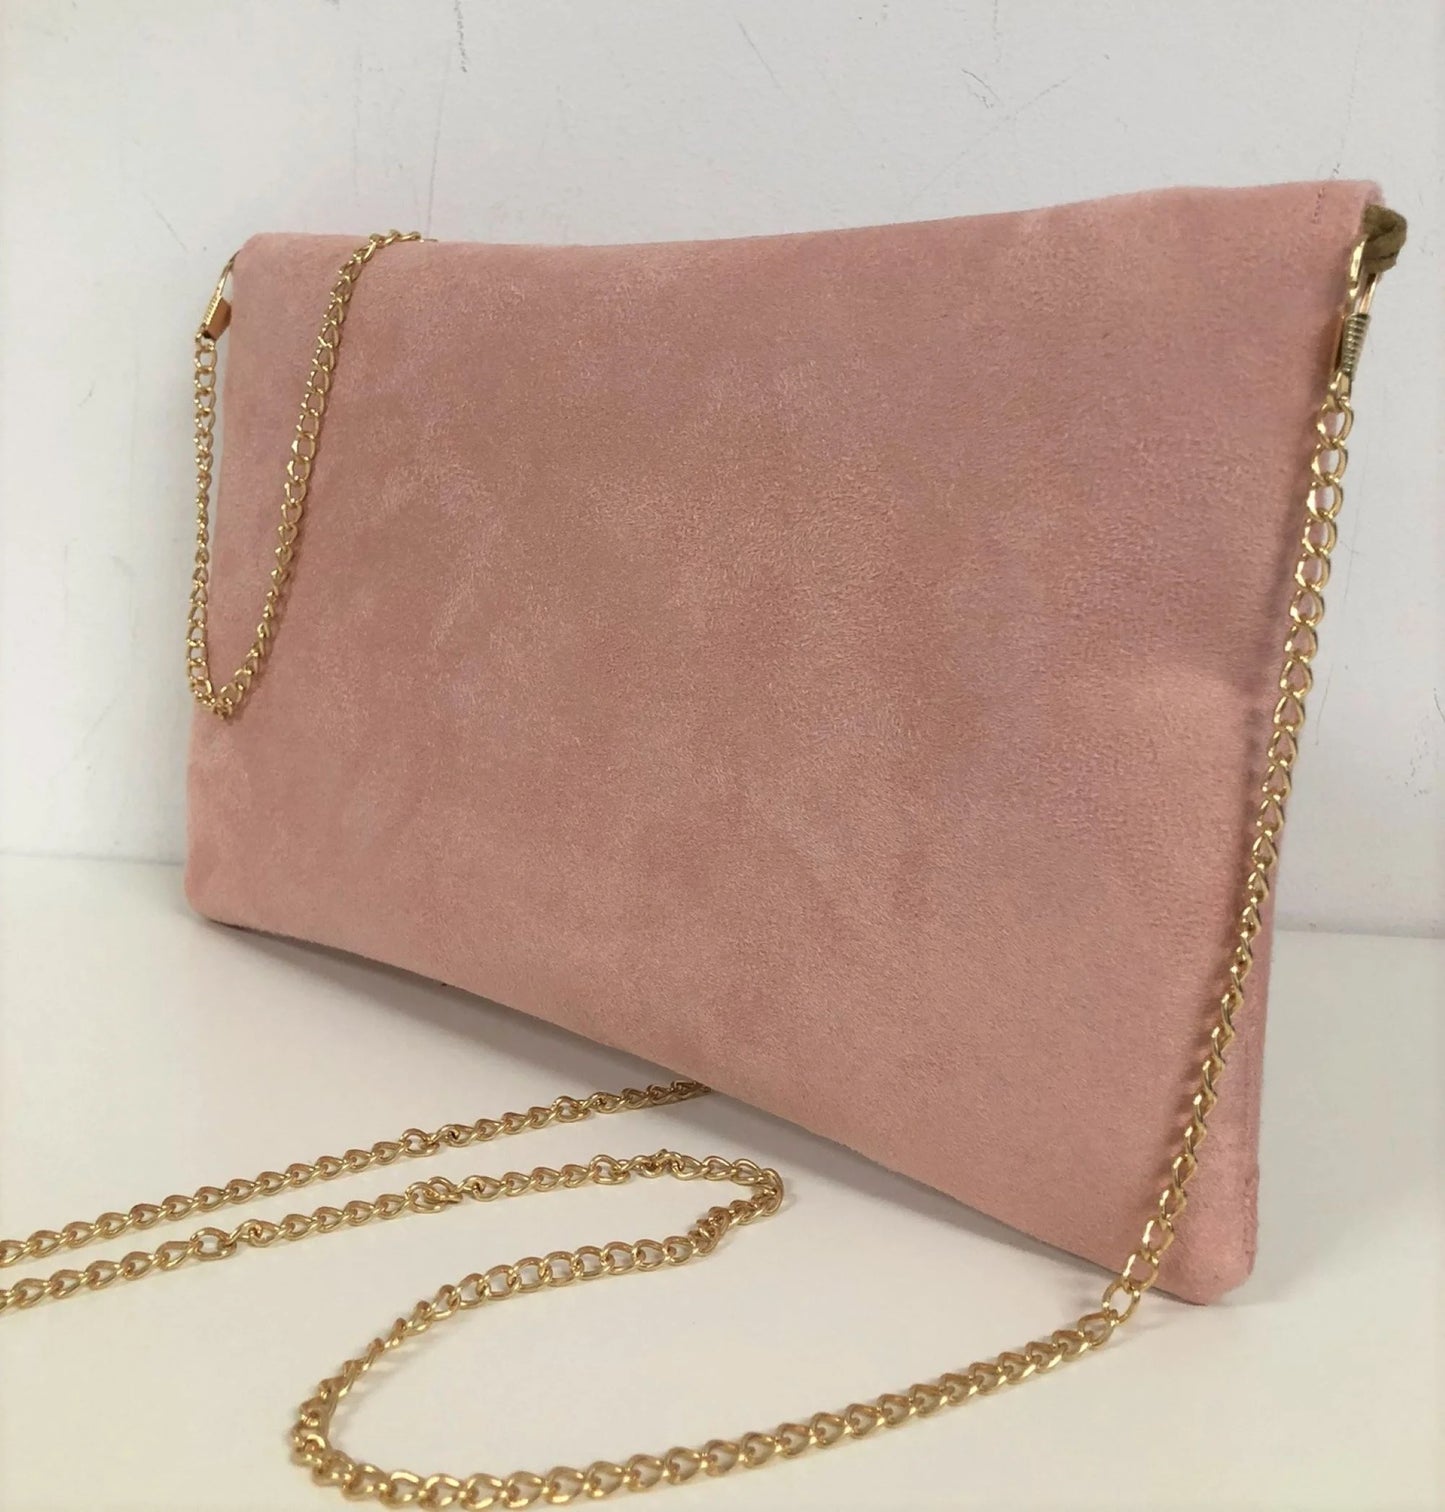 Le sac pochette Isa rose poudré à paillettes dorées, avec chainette amovible, vue de dos.